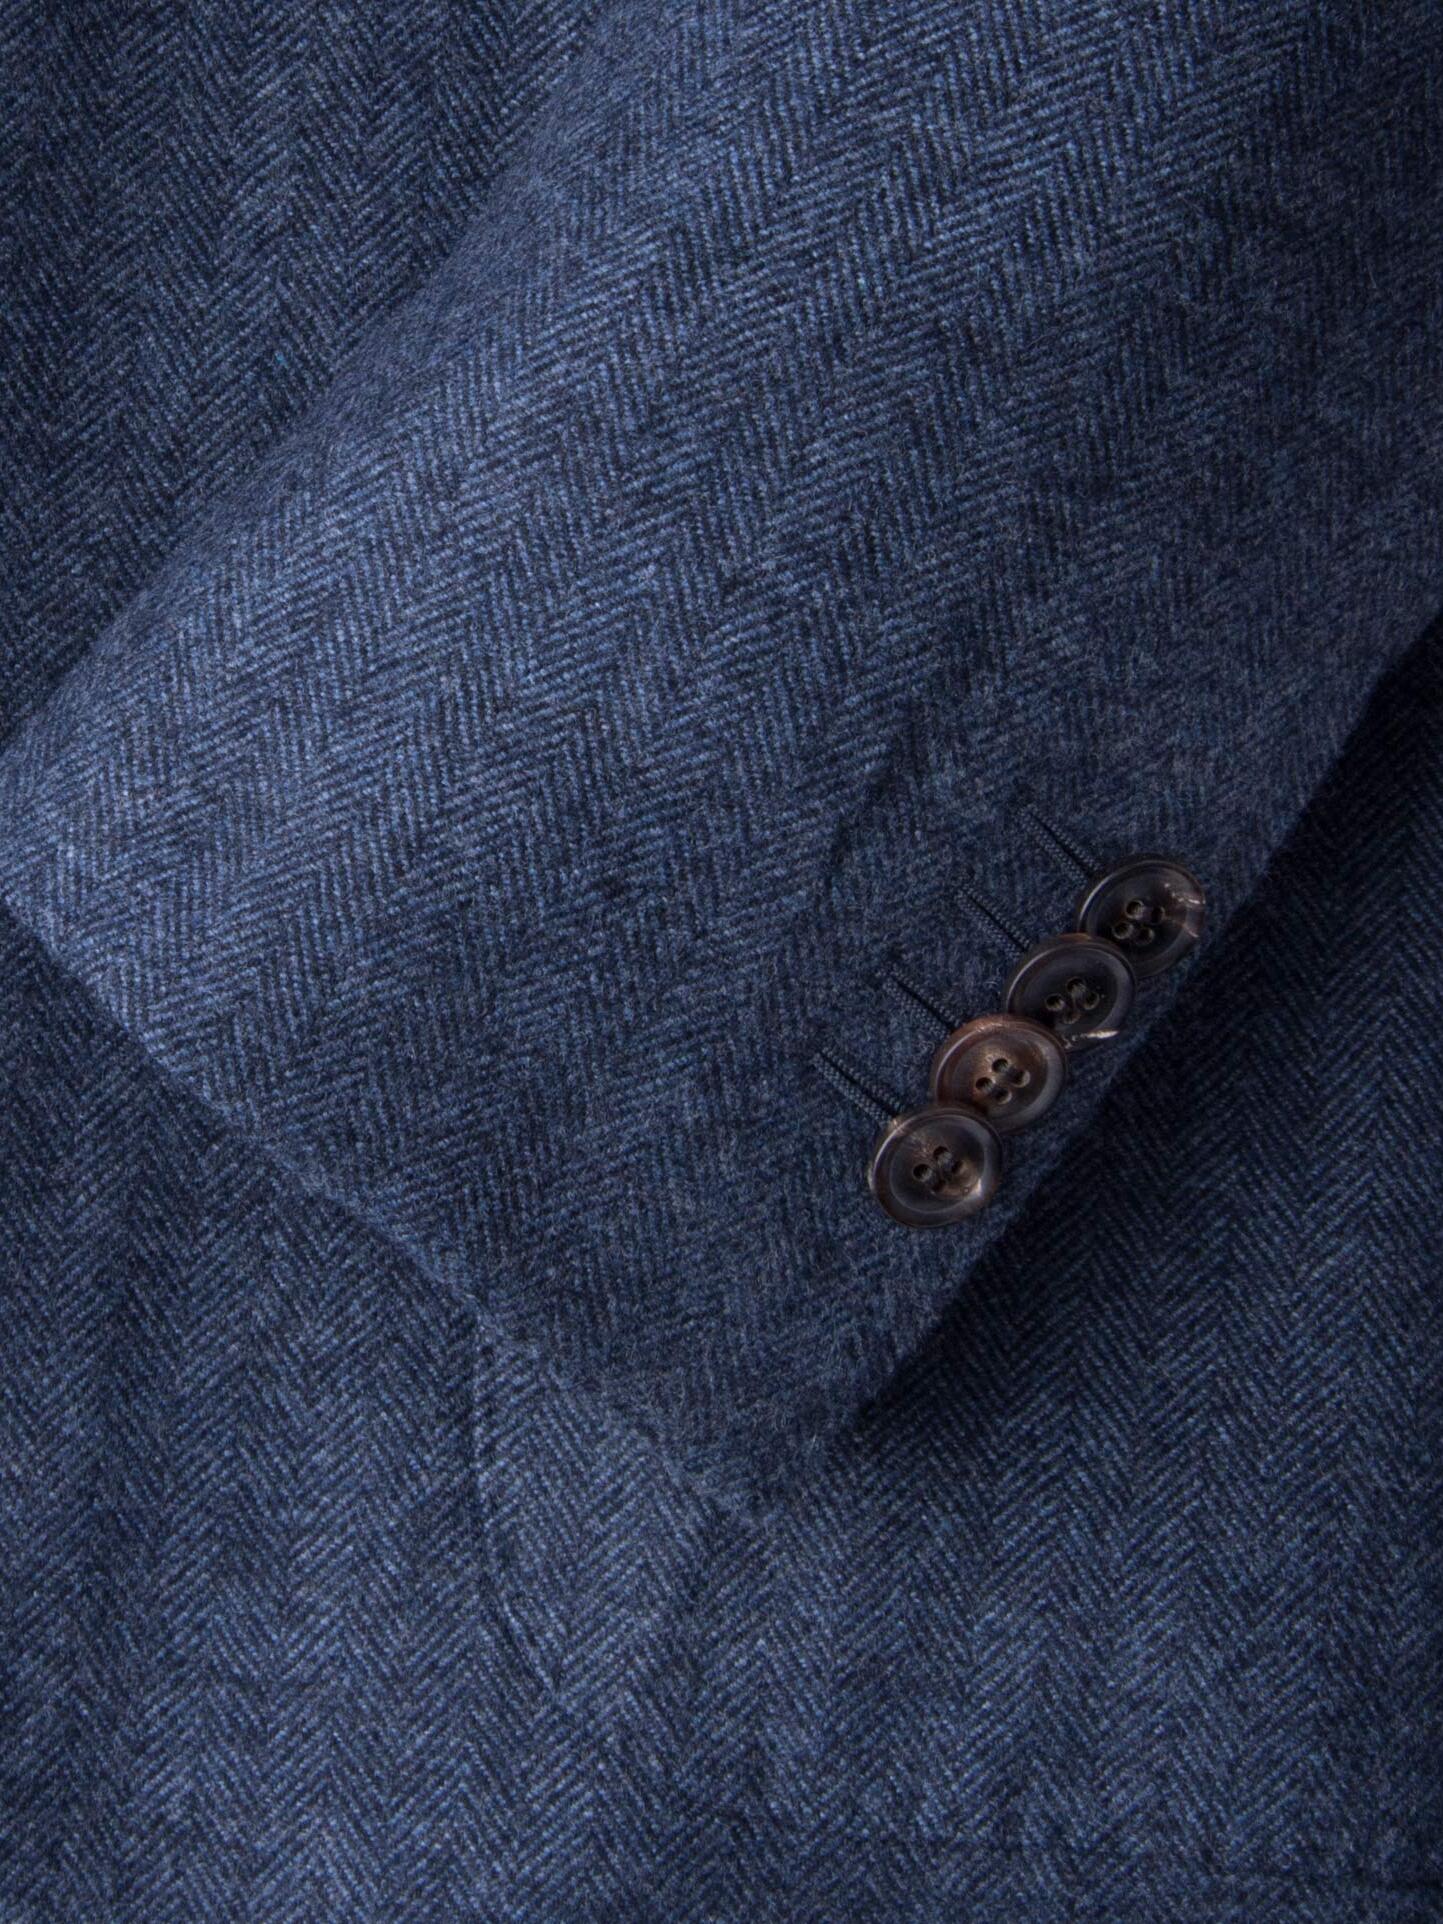 Slate Wool Cashmere Herringbone Hudson Jacket by Proper Cloth